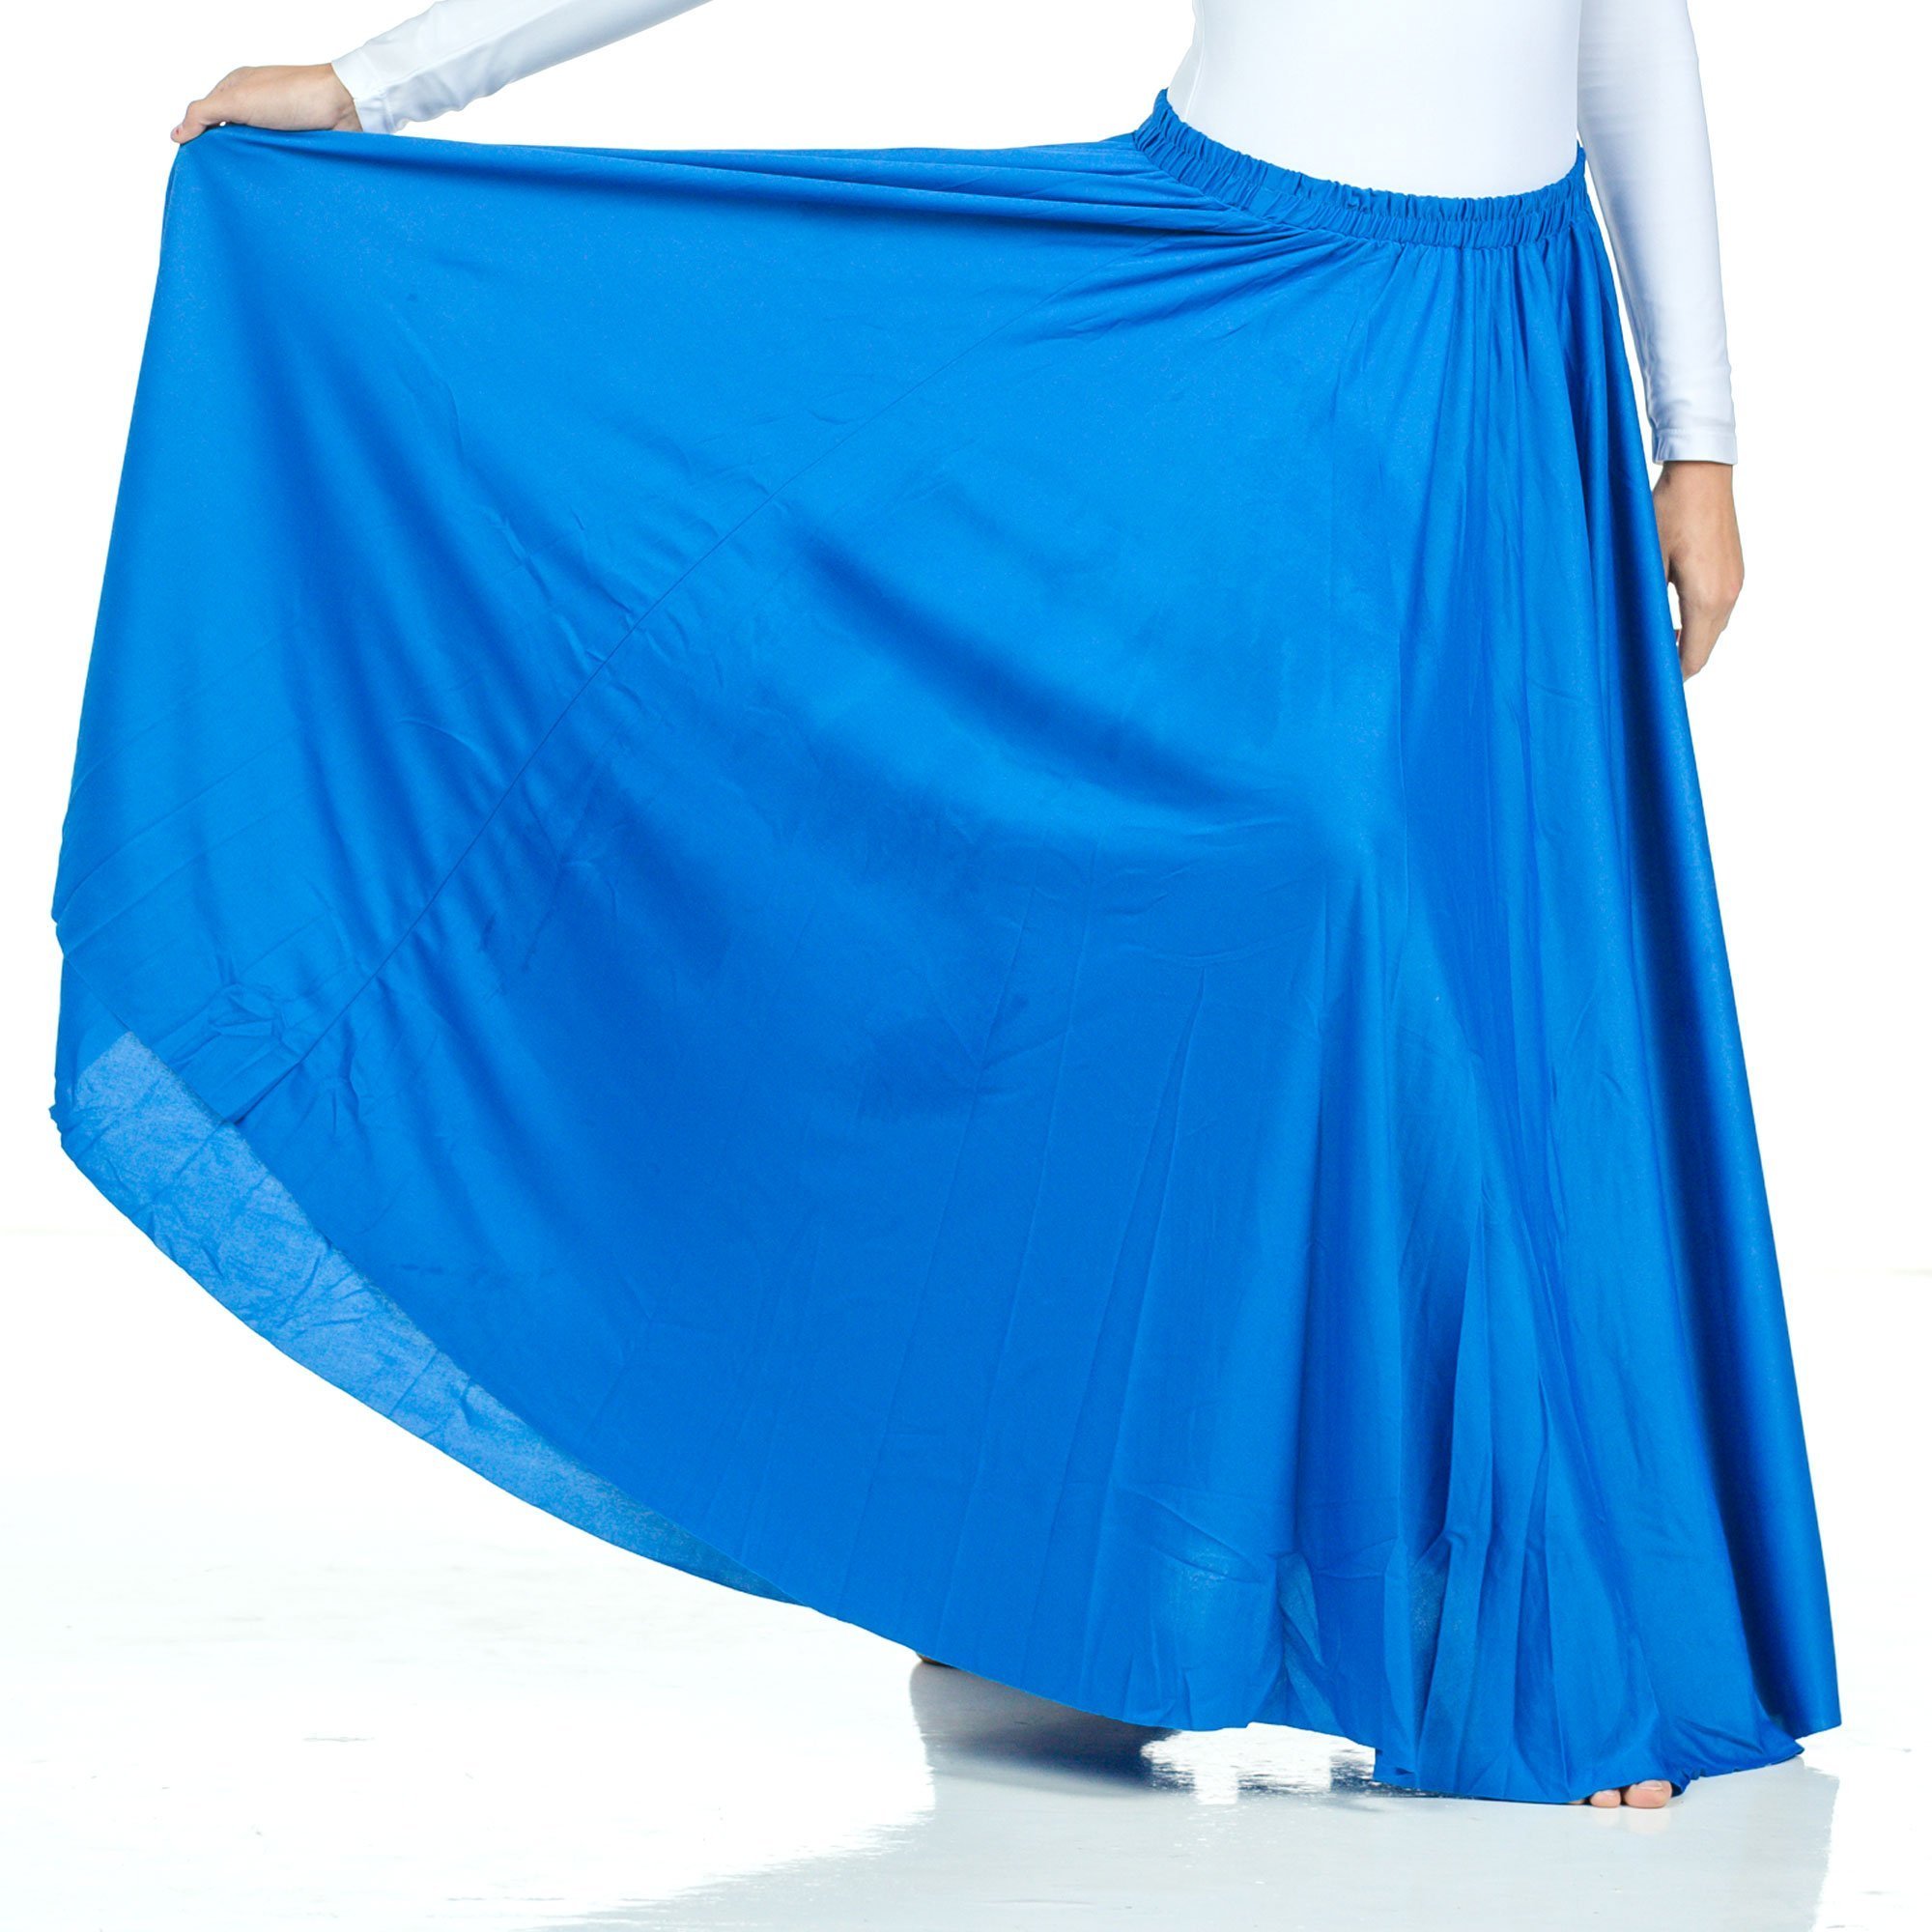 Danzcue Long Circle Skirt - Click Image to Close